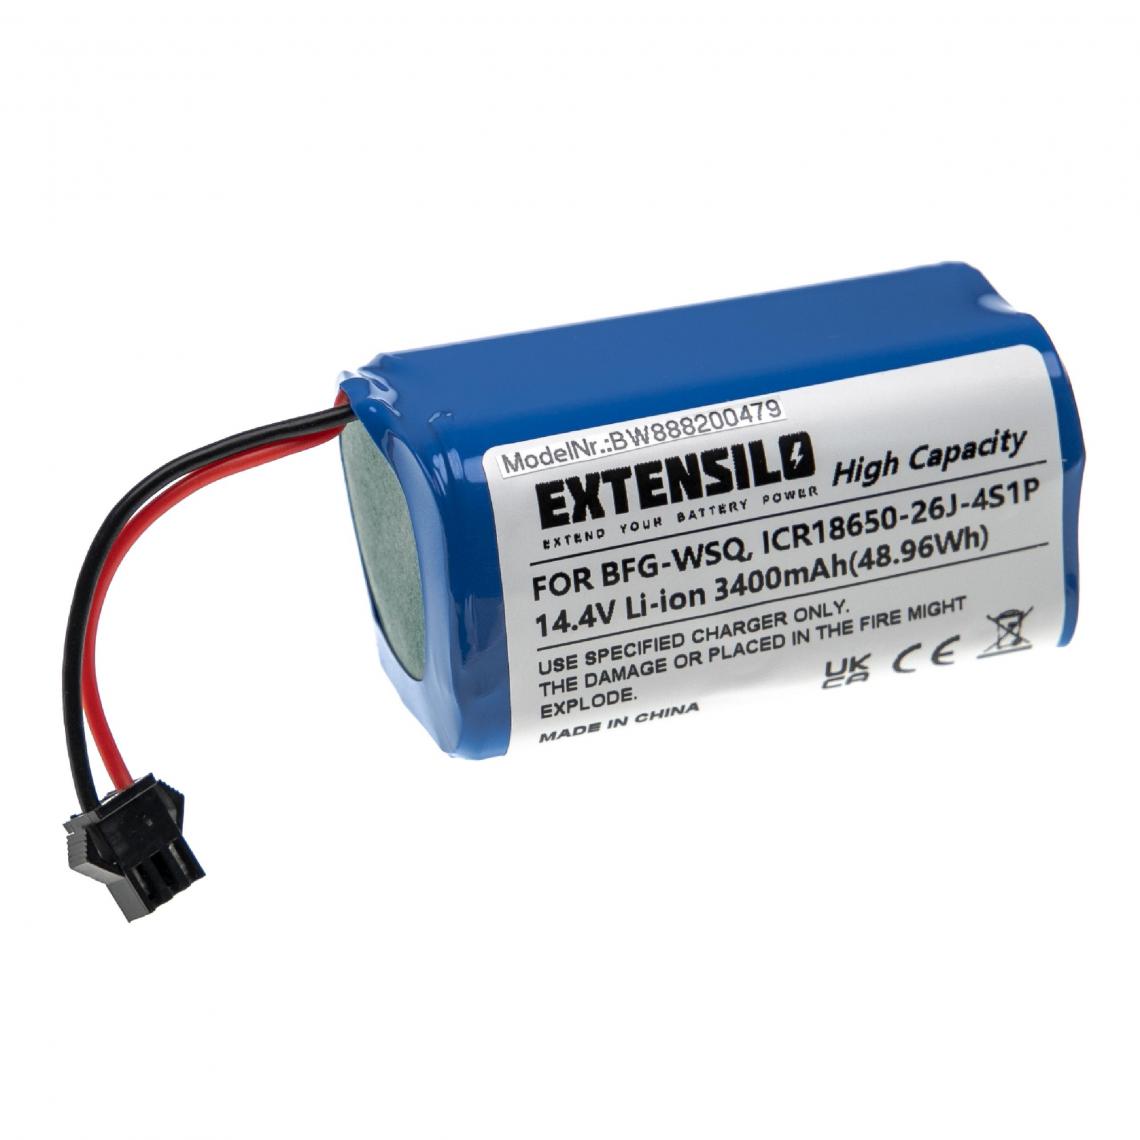 Vhbw - EXTENSILO Batterie compatible avec Ecovacs Deebot N79S aspirateur, robot électroménager (3 400mAh, 14,4V, Li-ion) - Accessoire entretien des sols